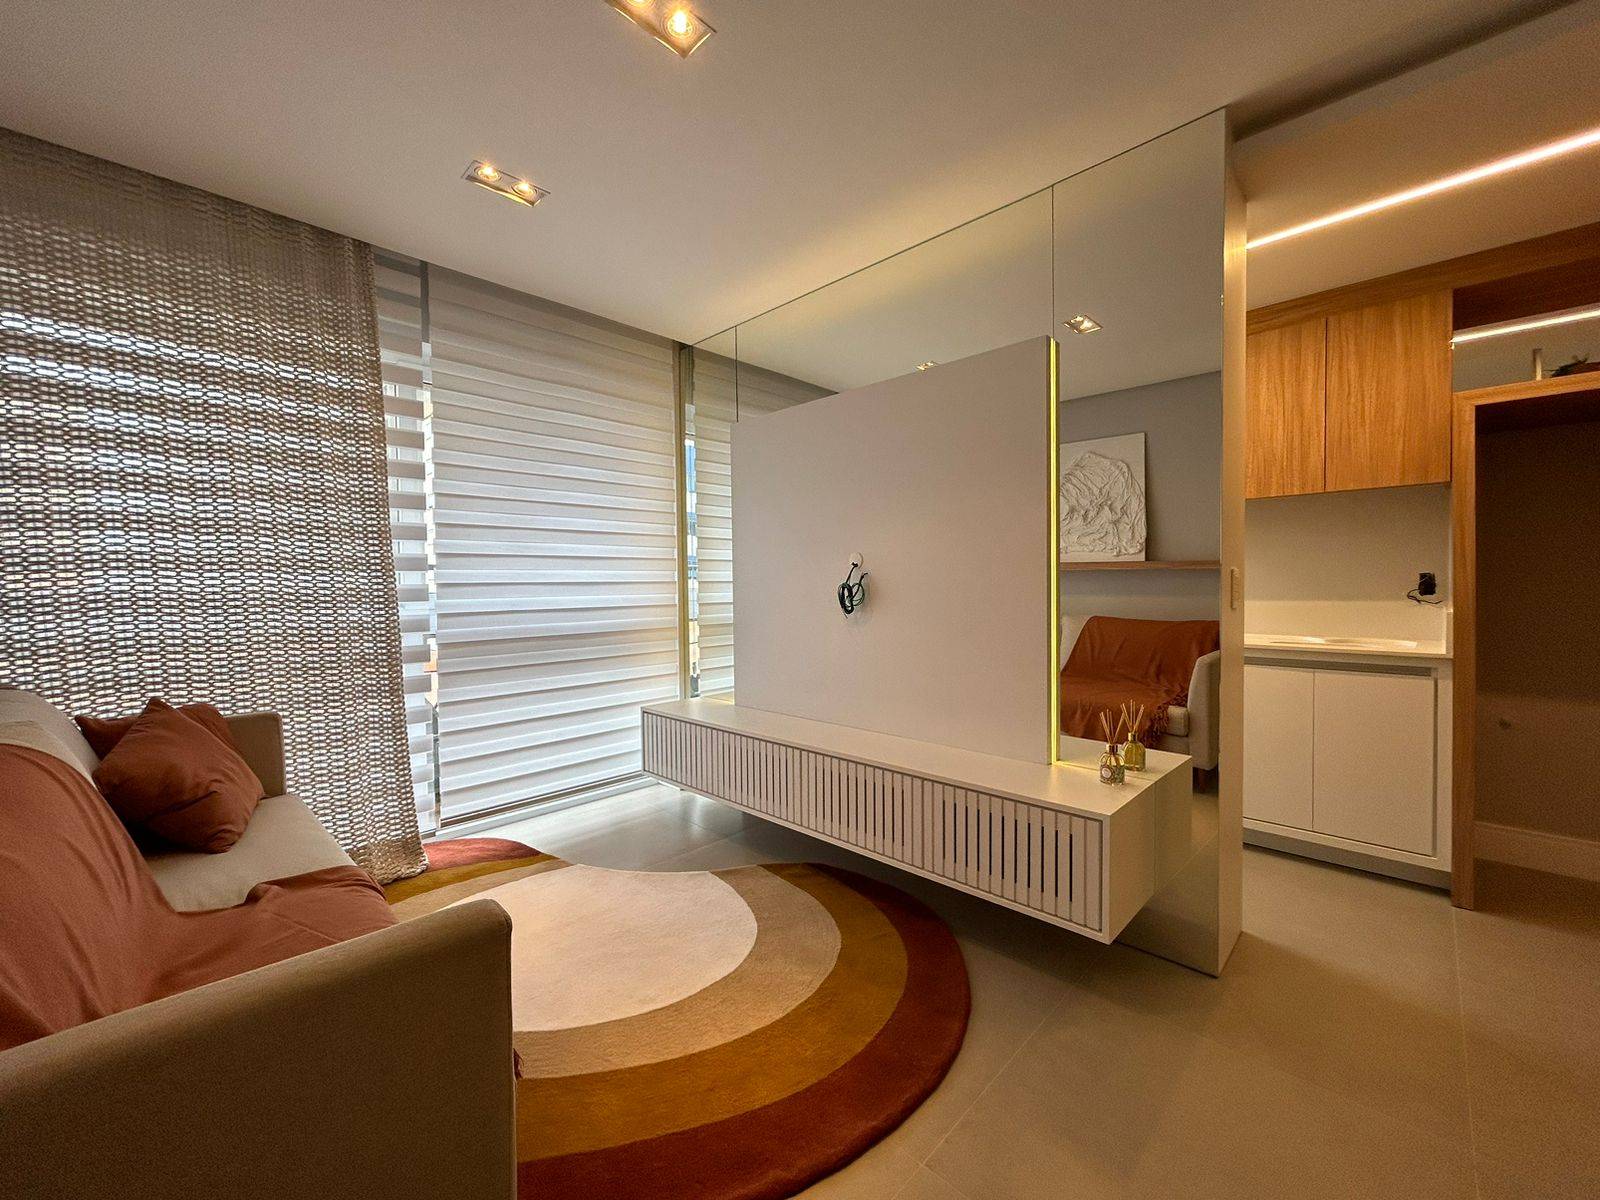 Apartamento 2 dormitórios para venda, Zona Nova em Capão da Canoa | Ref.: 7596